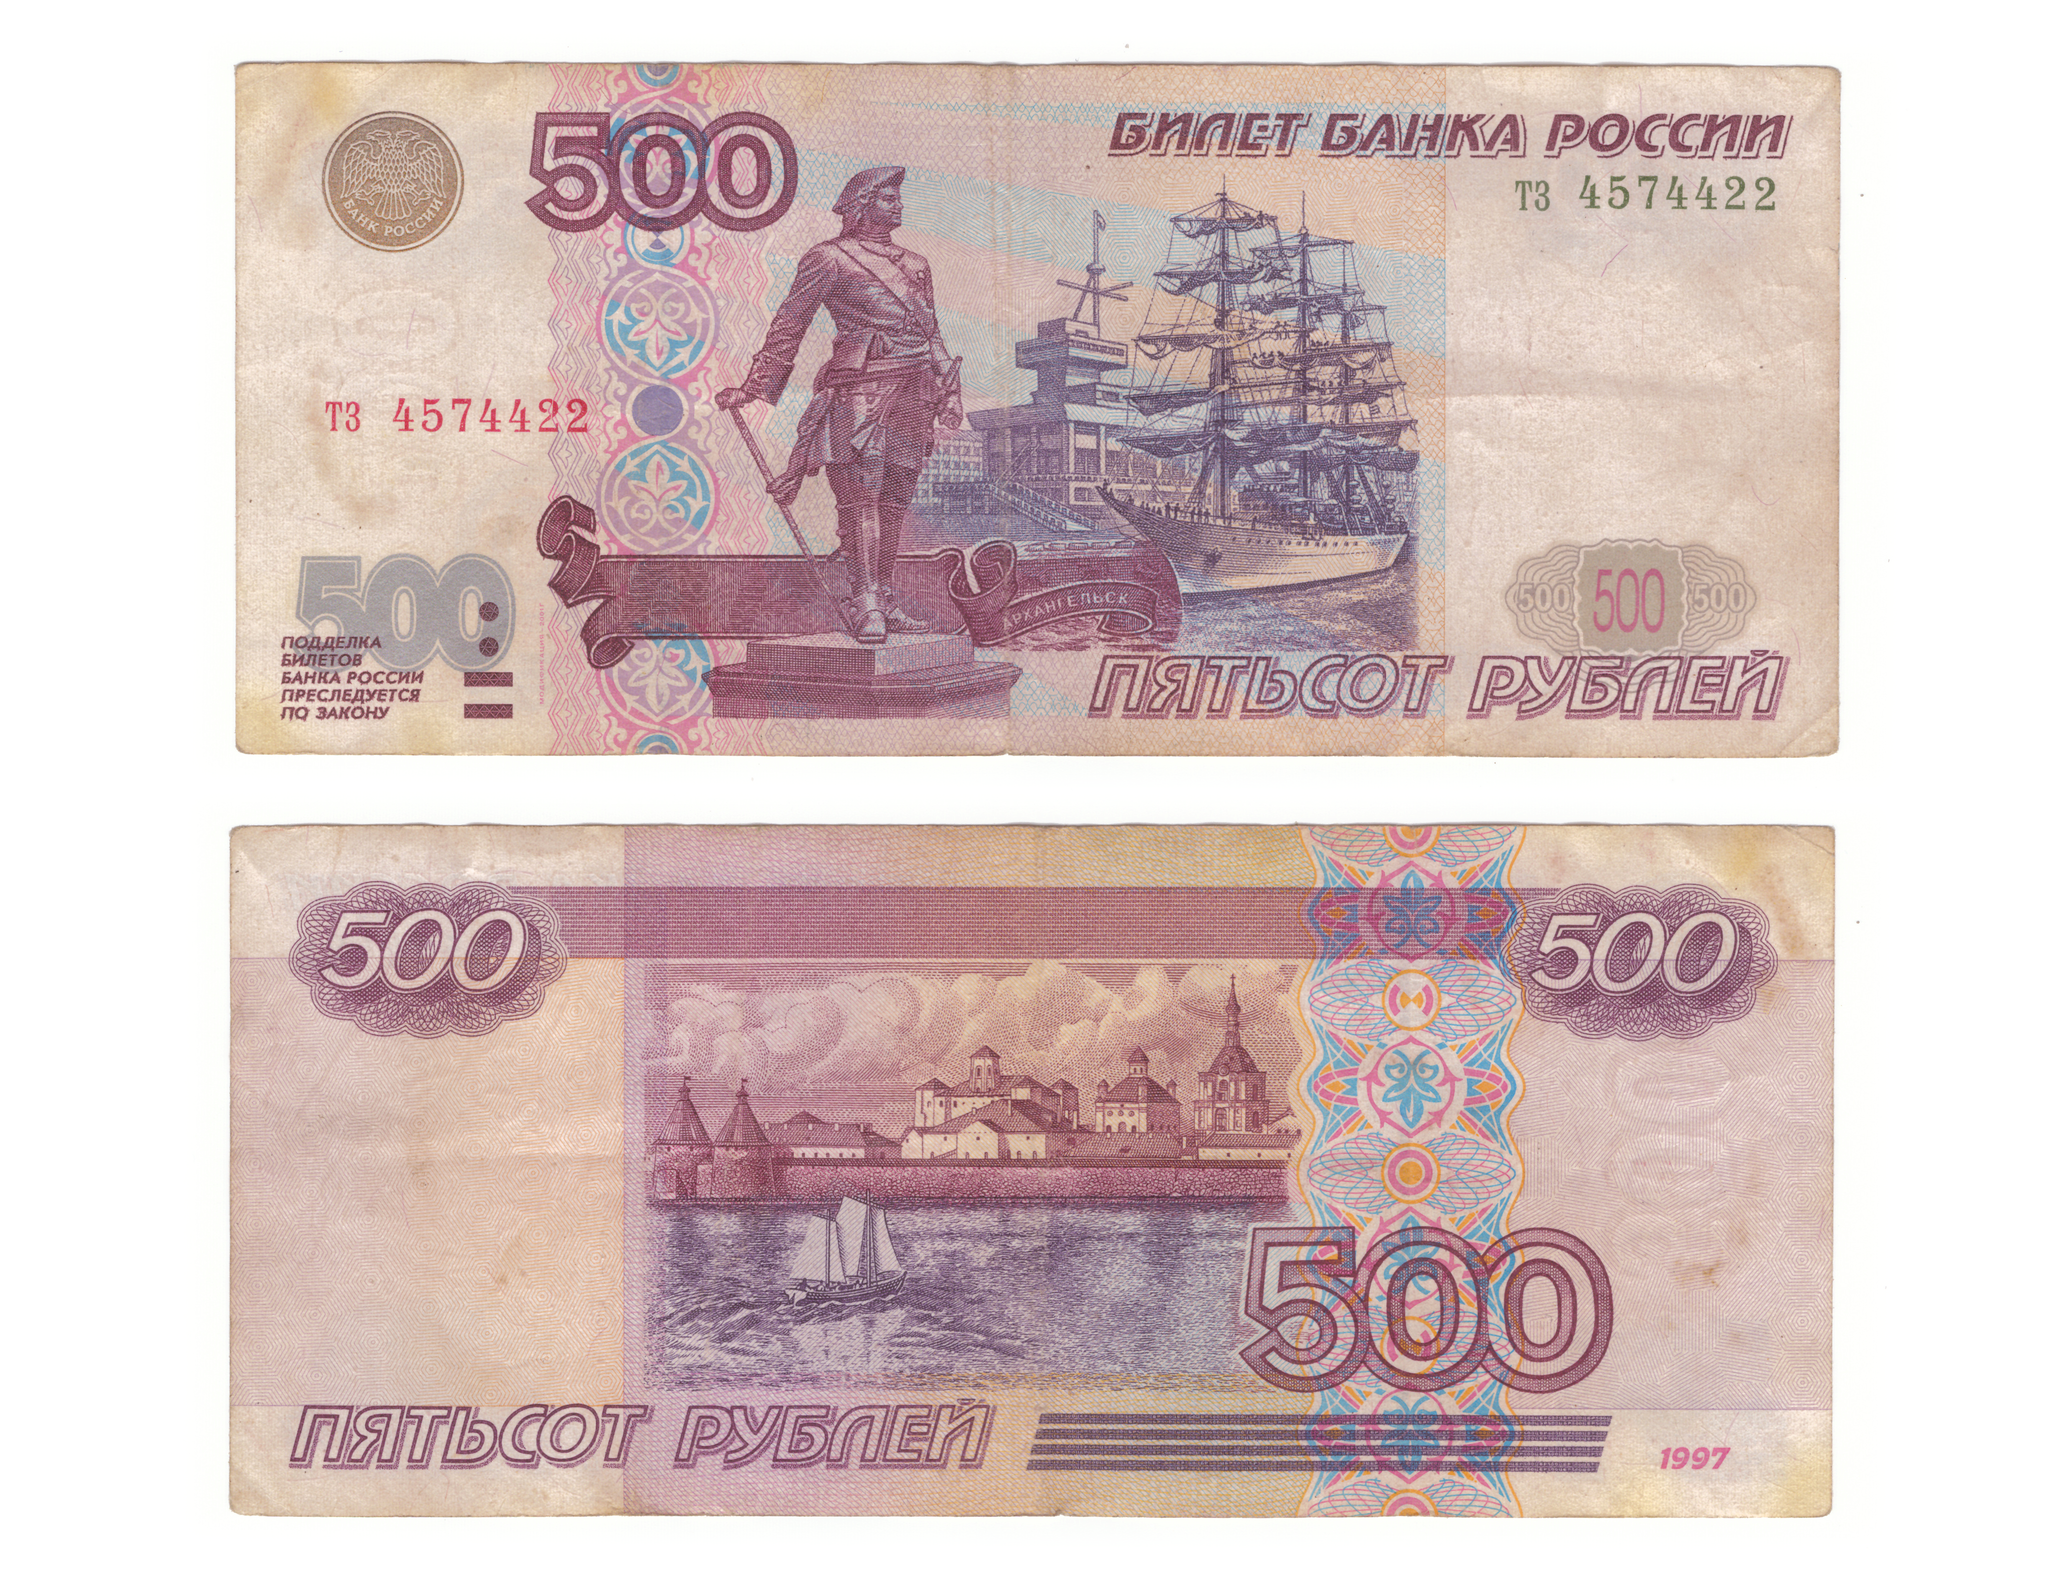 500 рублей 250. 500 000 Рублей 1995. Купюра 500 рублей 1995. Купюра 500 000 рублей 1995. Купюра 500000 рублей 1995 года.